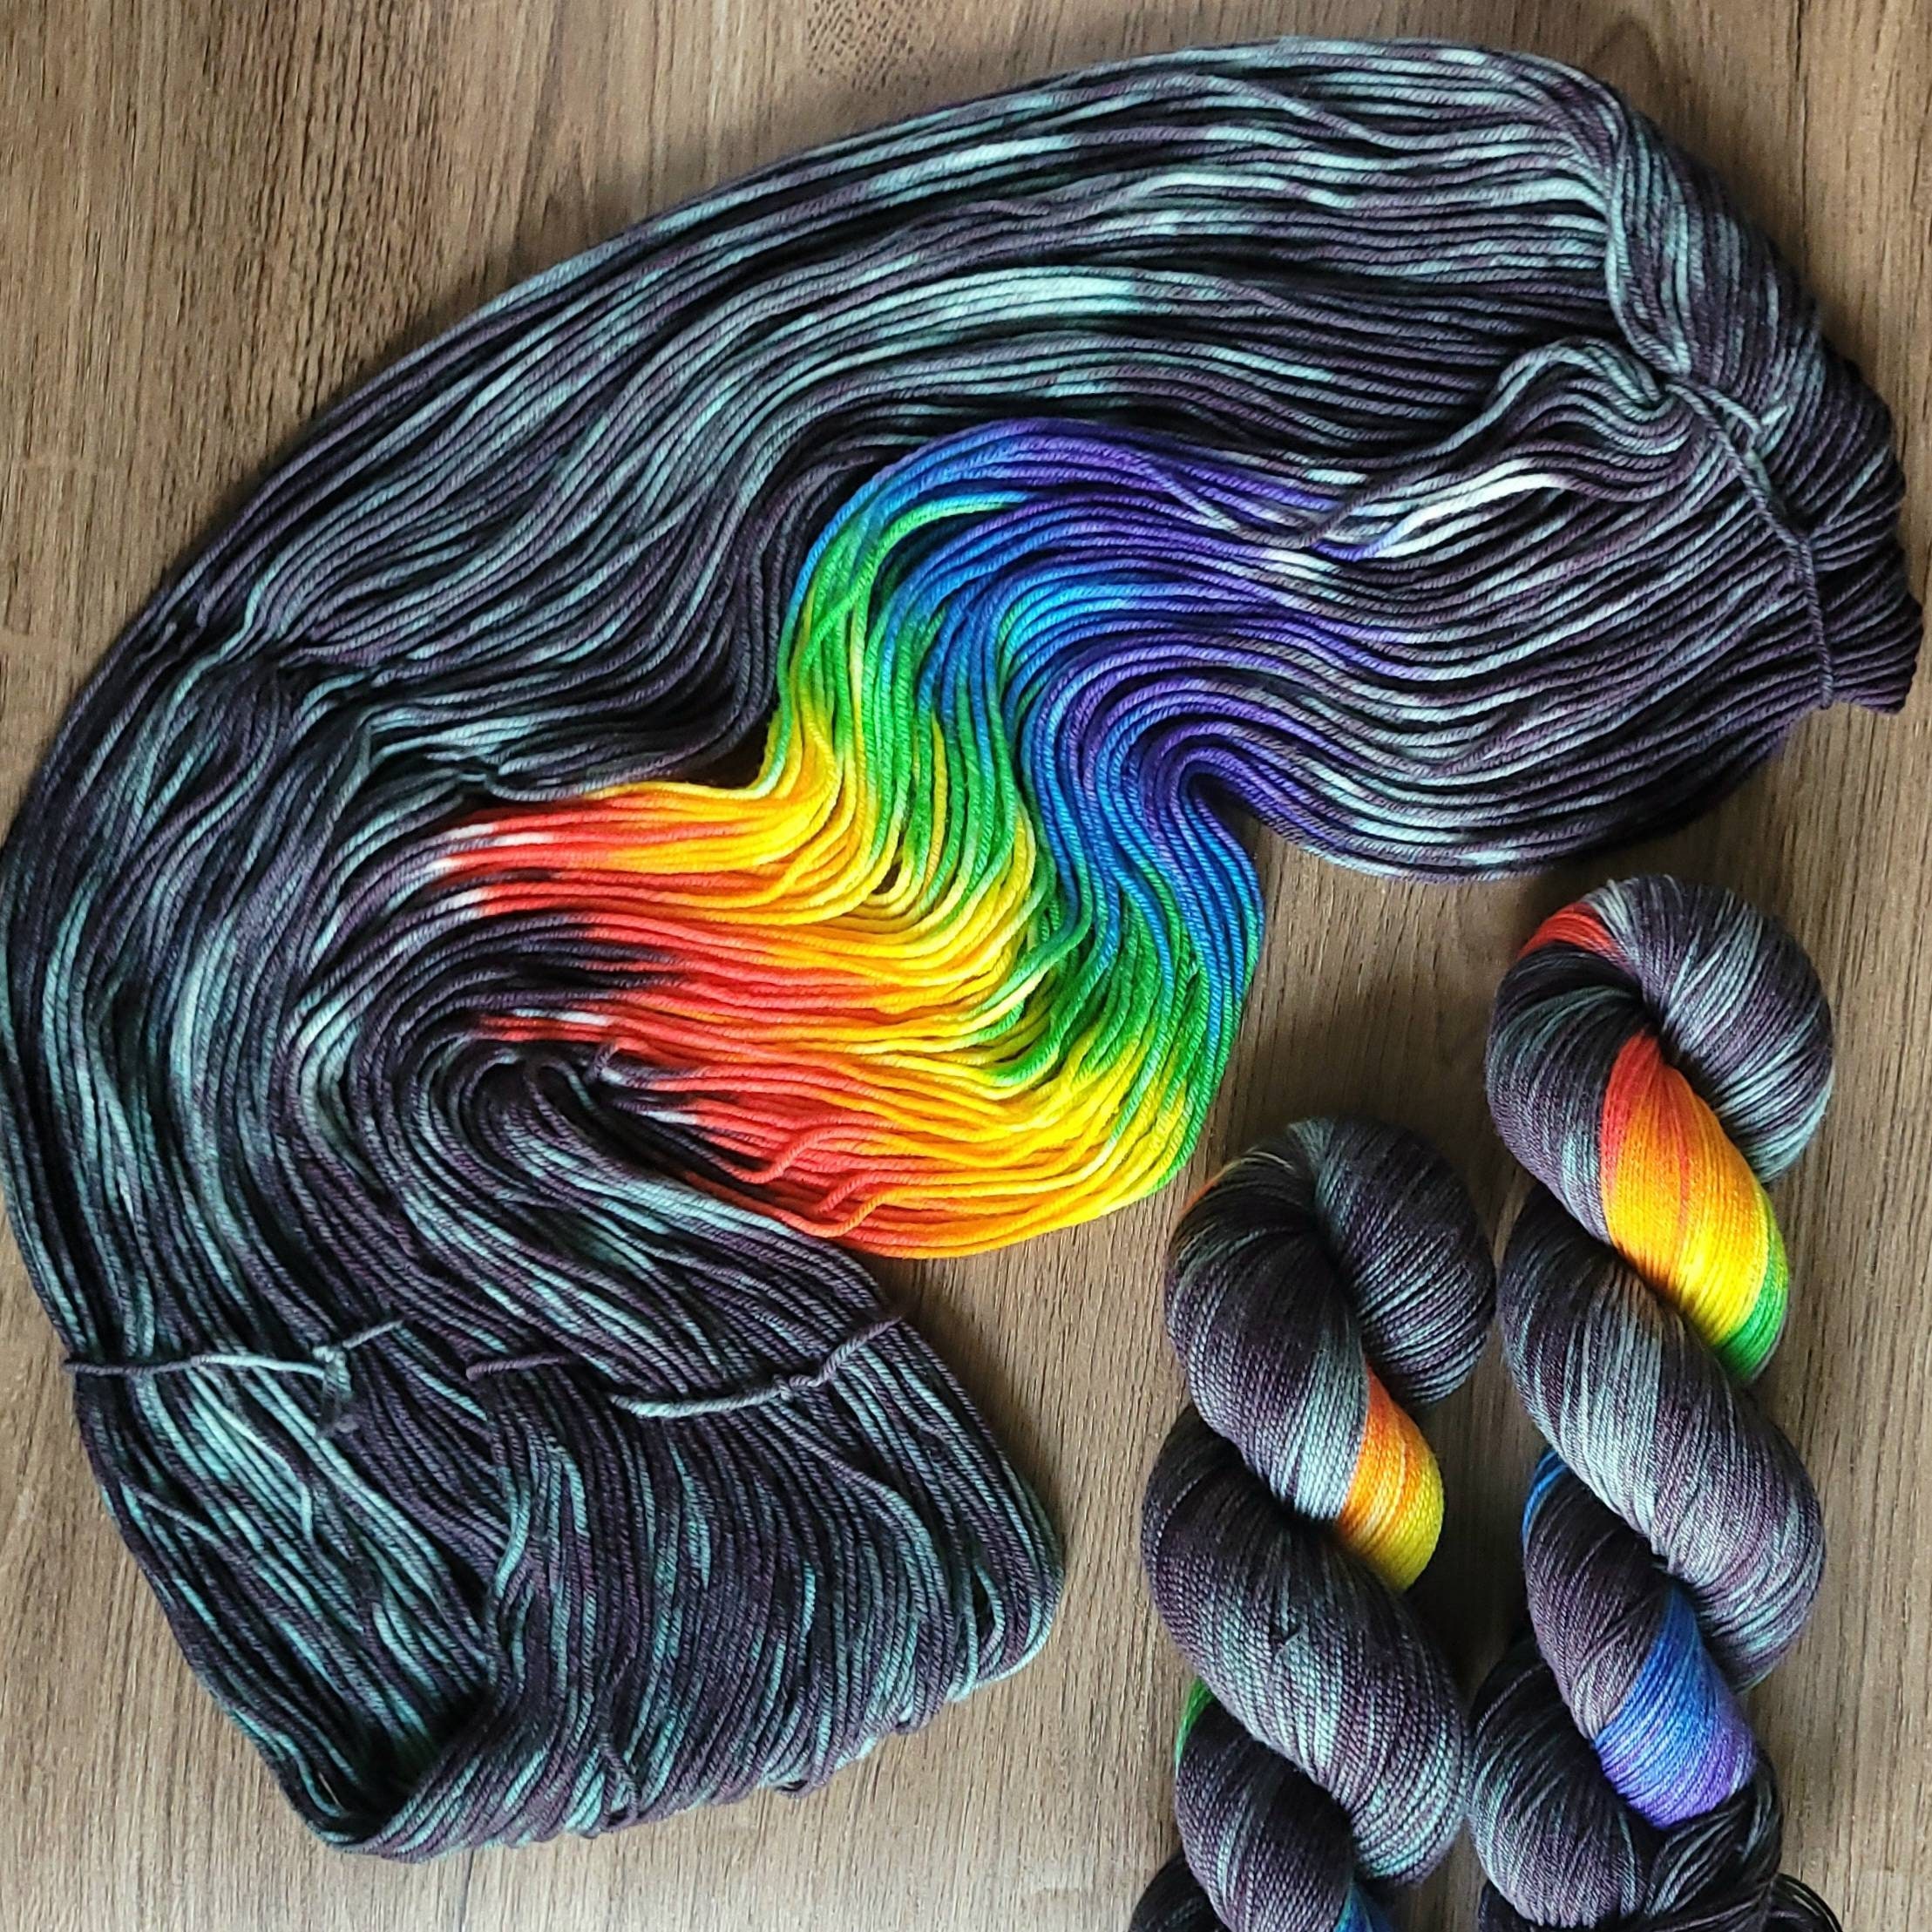 Malabrigo Chunky Yarn - Hand Dyed Yarn - Knit Along Club